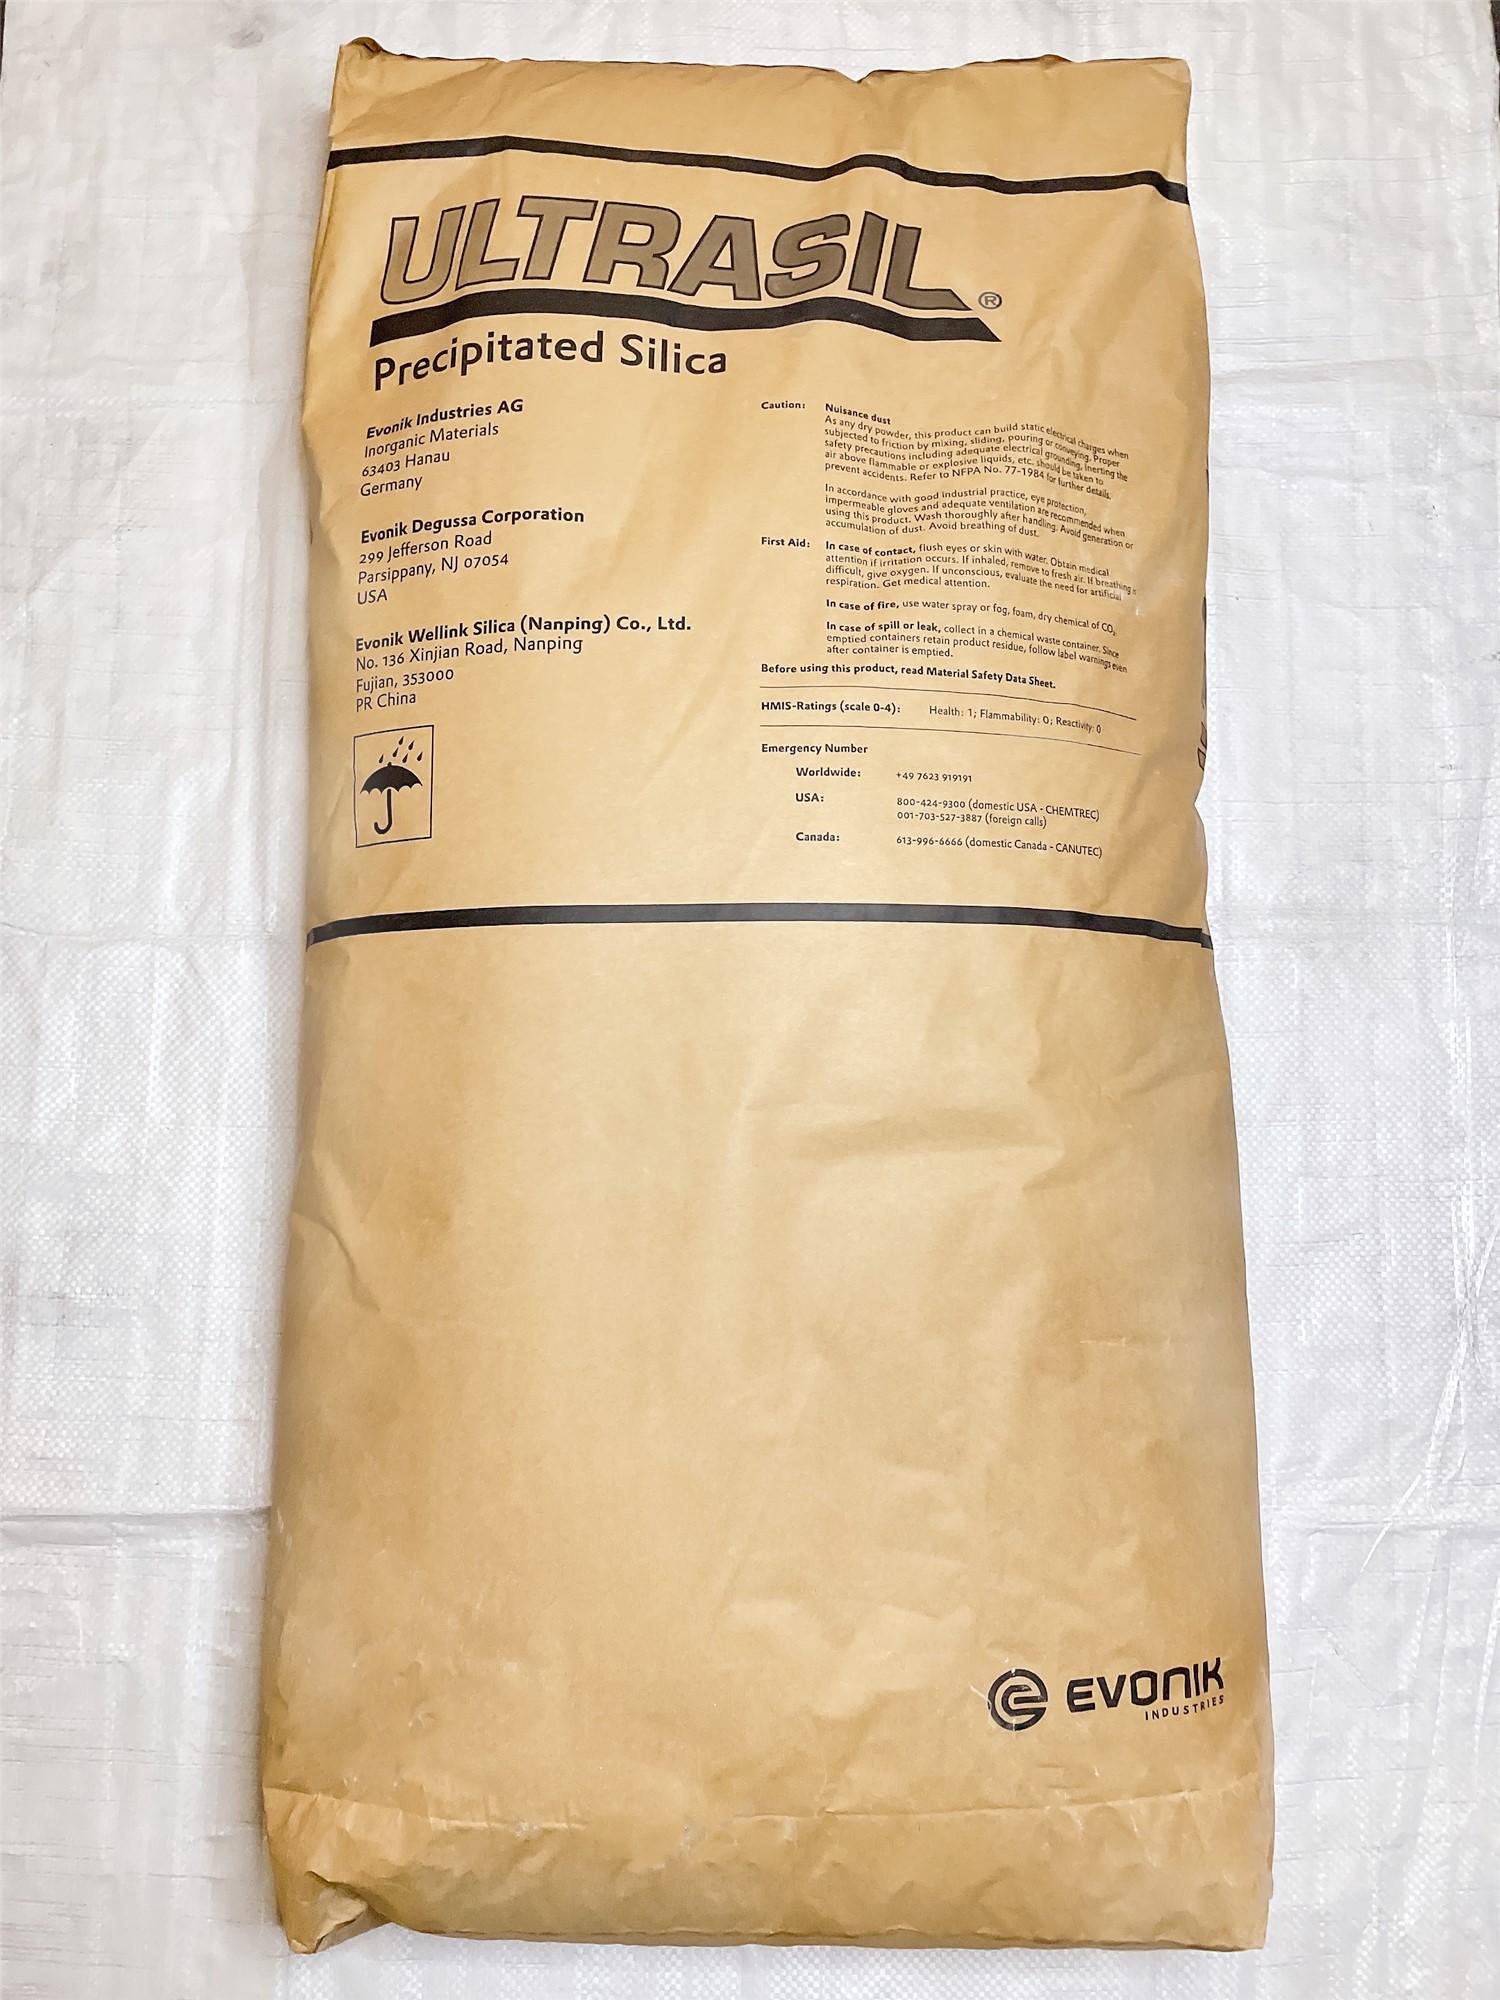 白炭黑VN3 20公斤一件、国产橡胶制品 、1000目白色粉末